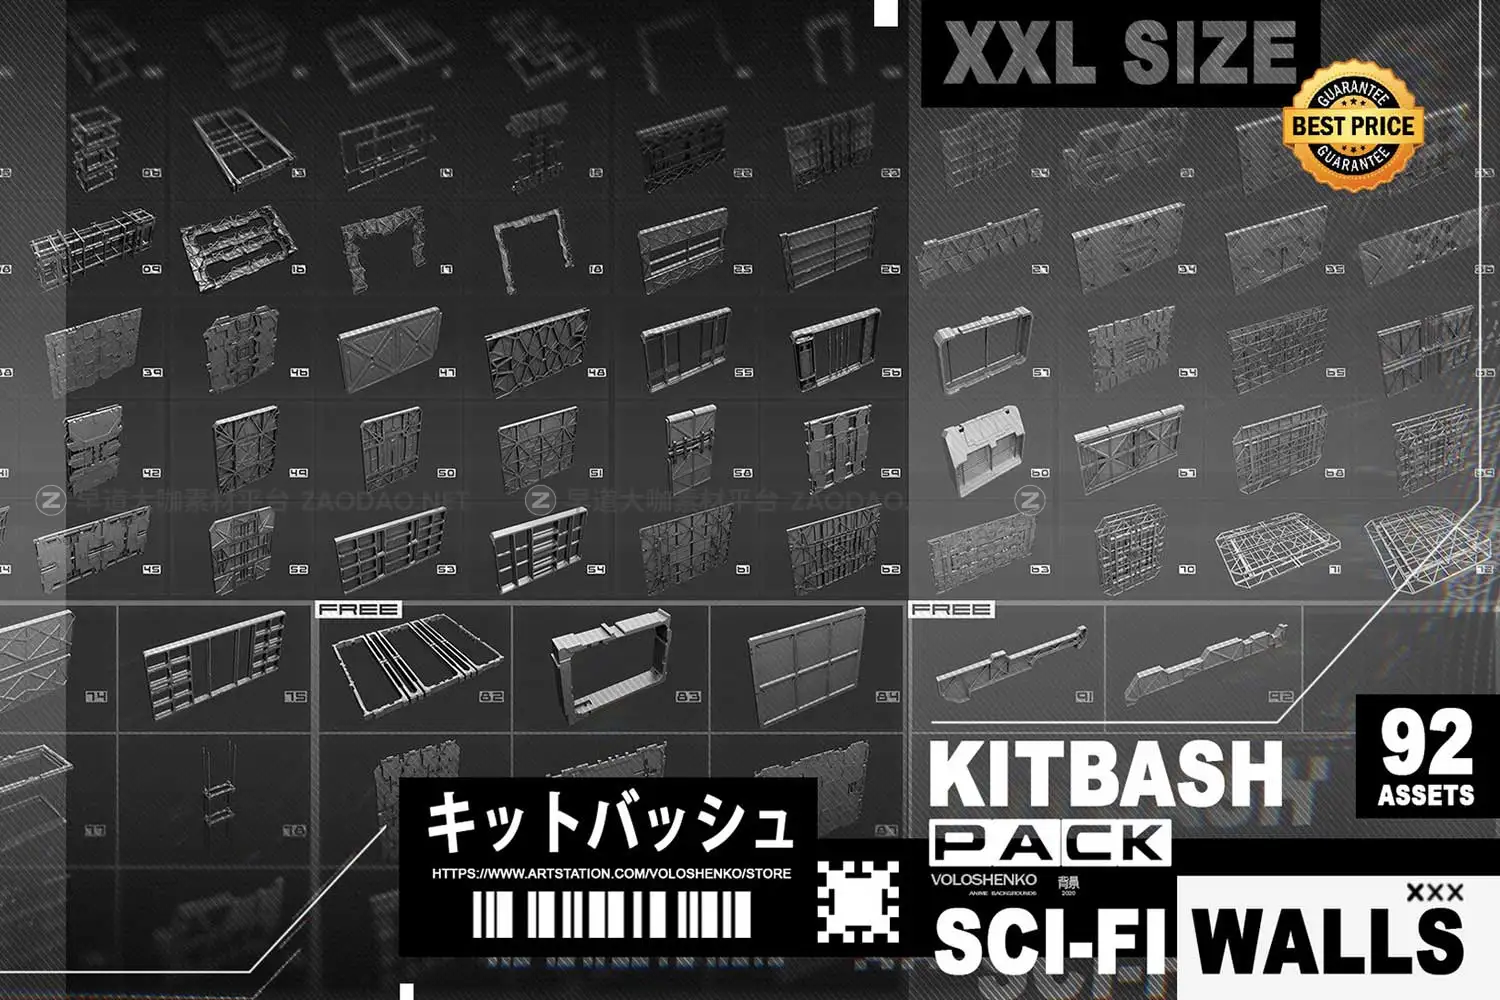 92组未来科幻金属墙壁元素3D模型FBX/MAX格式素材包 Sci-Fi Walls Kitbash Pack 92+ Vol 7插图